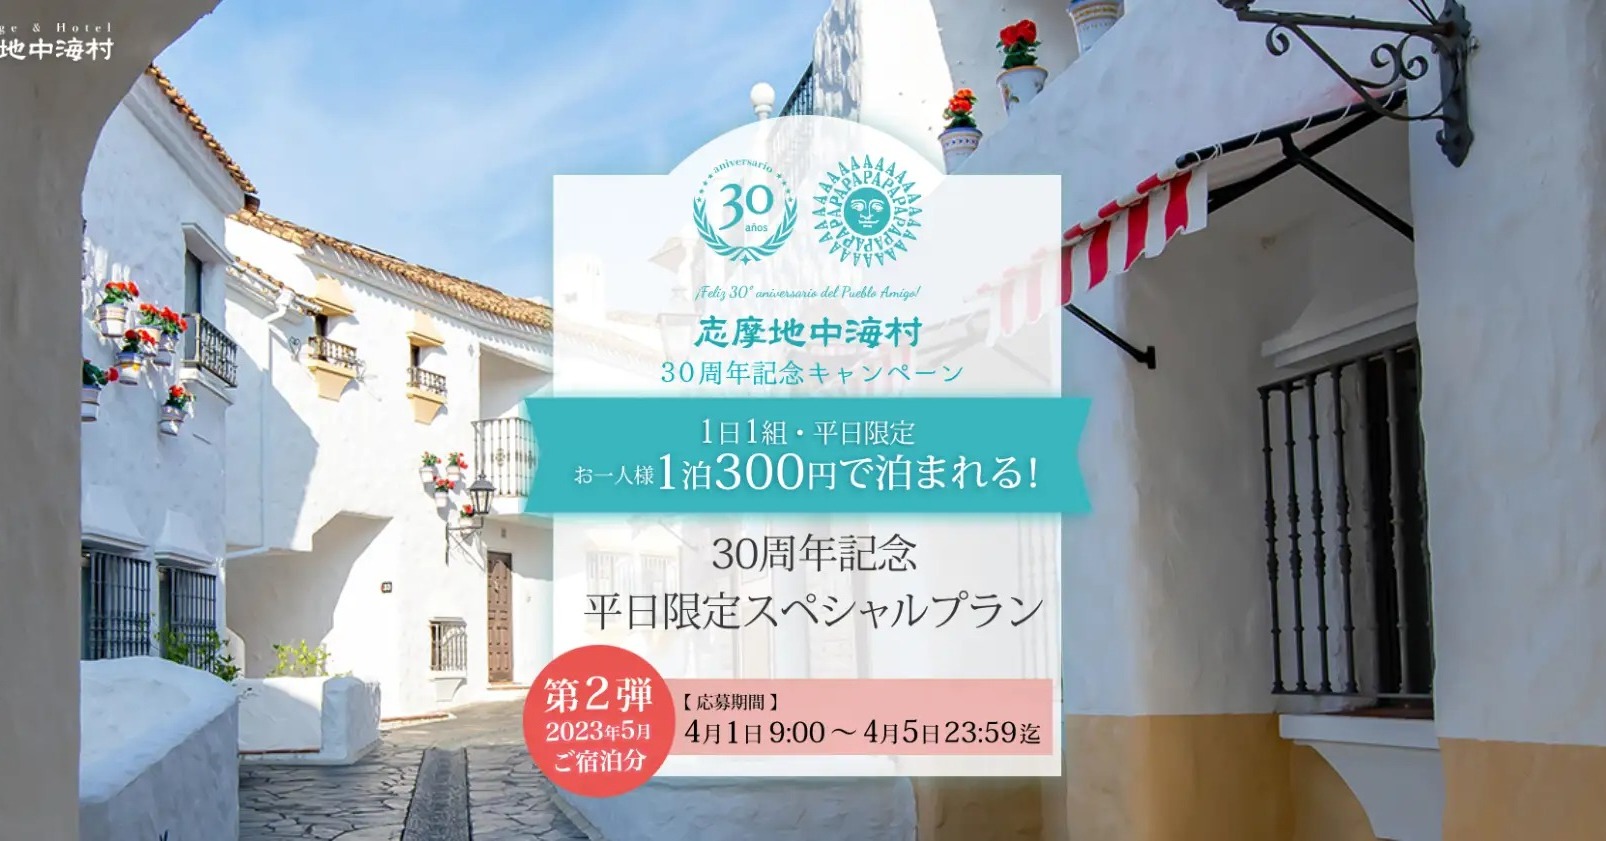 「1泊2食付き300円」──「志摩地中海村」の衝撃プランが話題　18枠に3.5万件の応募